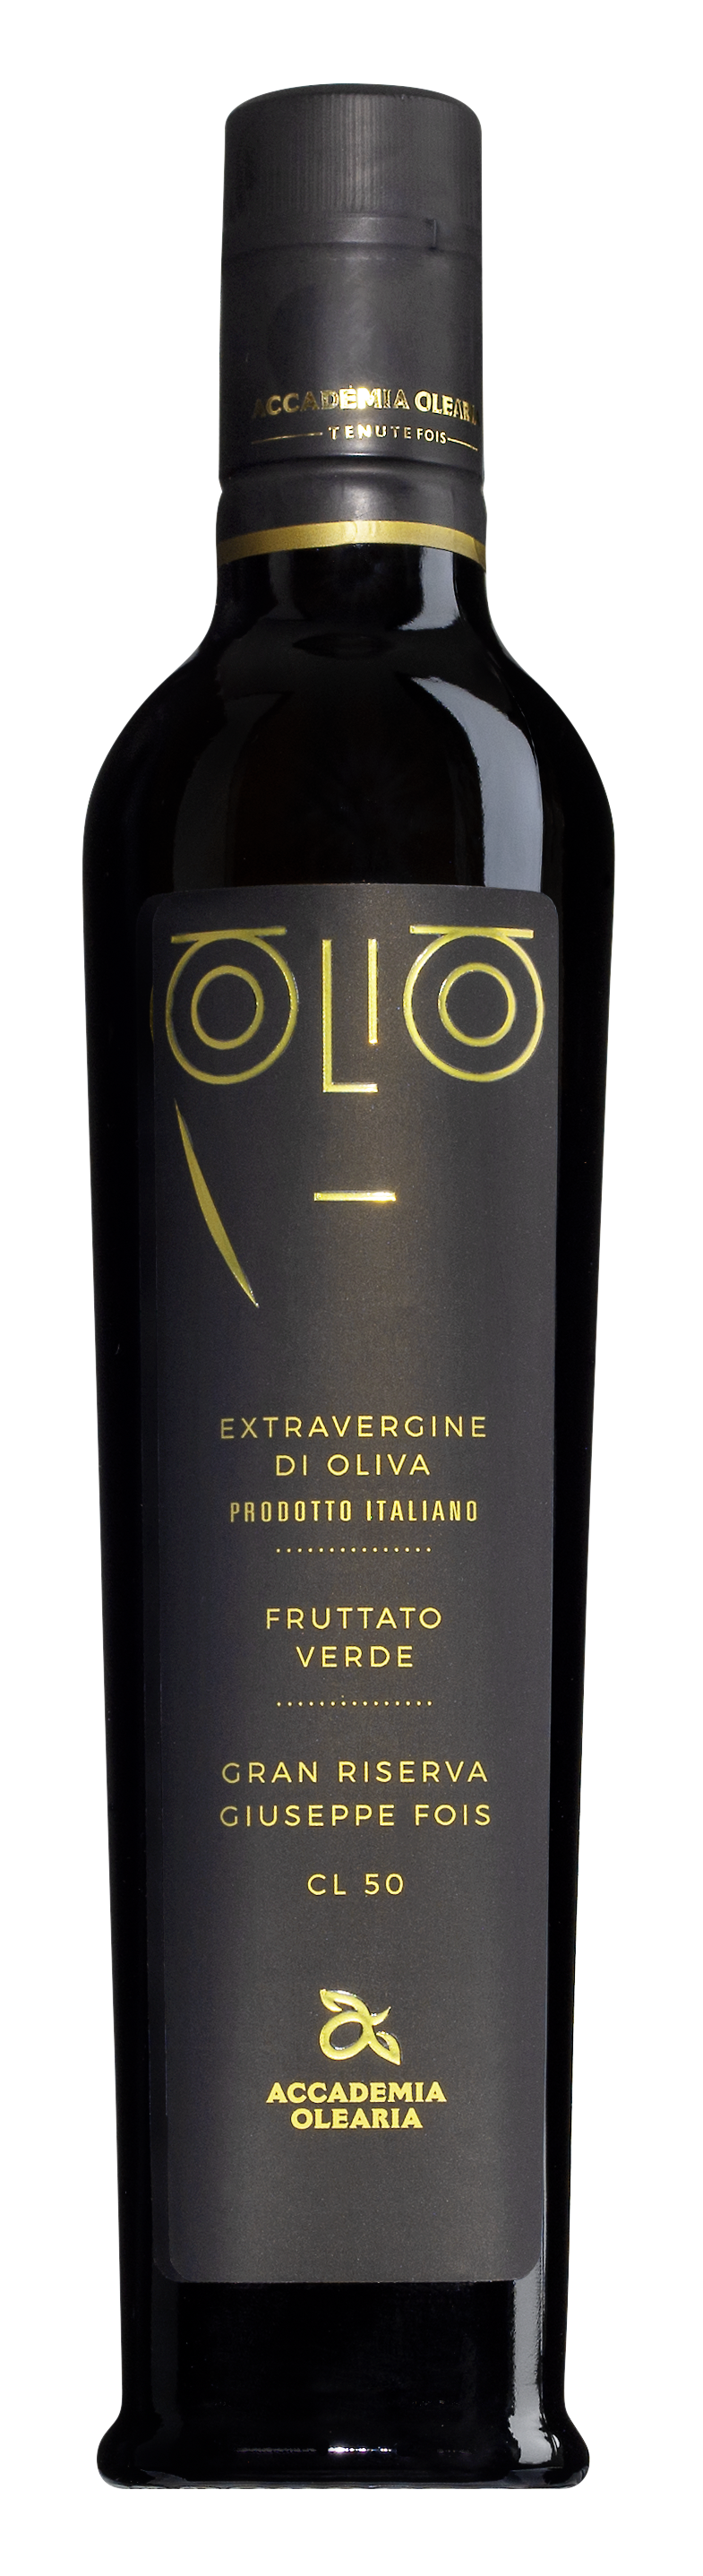 Olio Extravergine di Oliva Gran Reserva Giusepp Fois 0